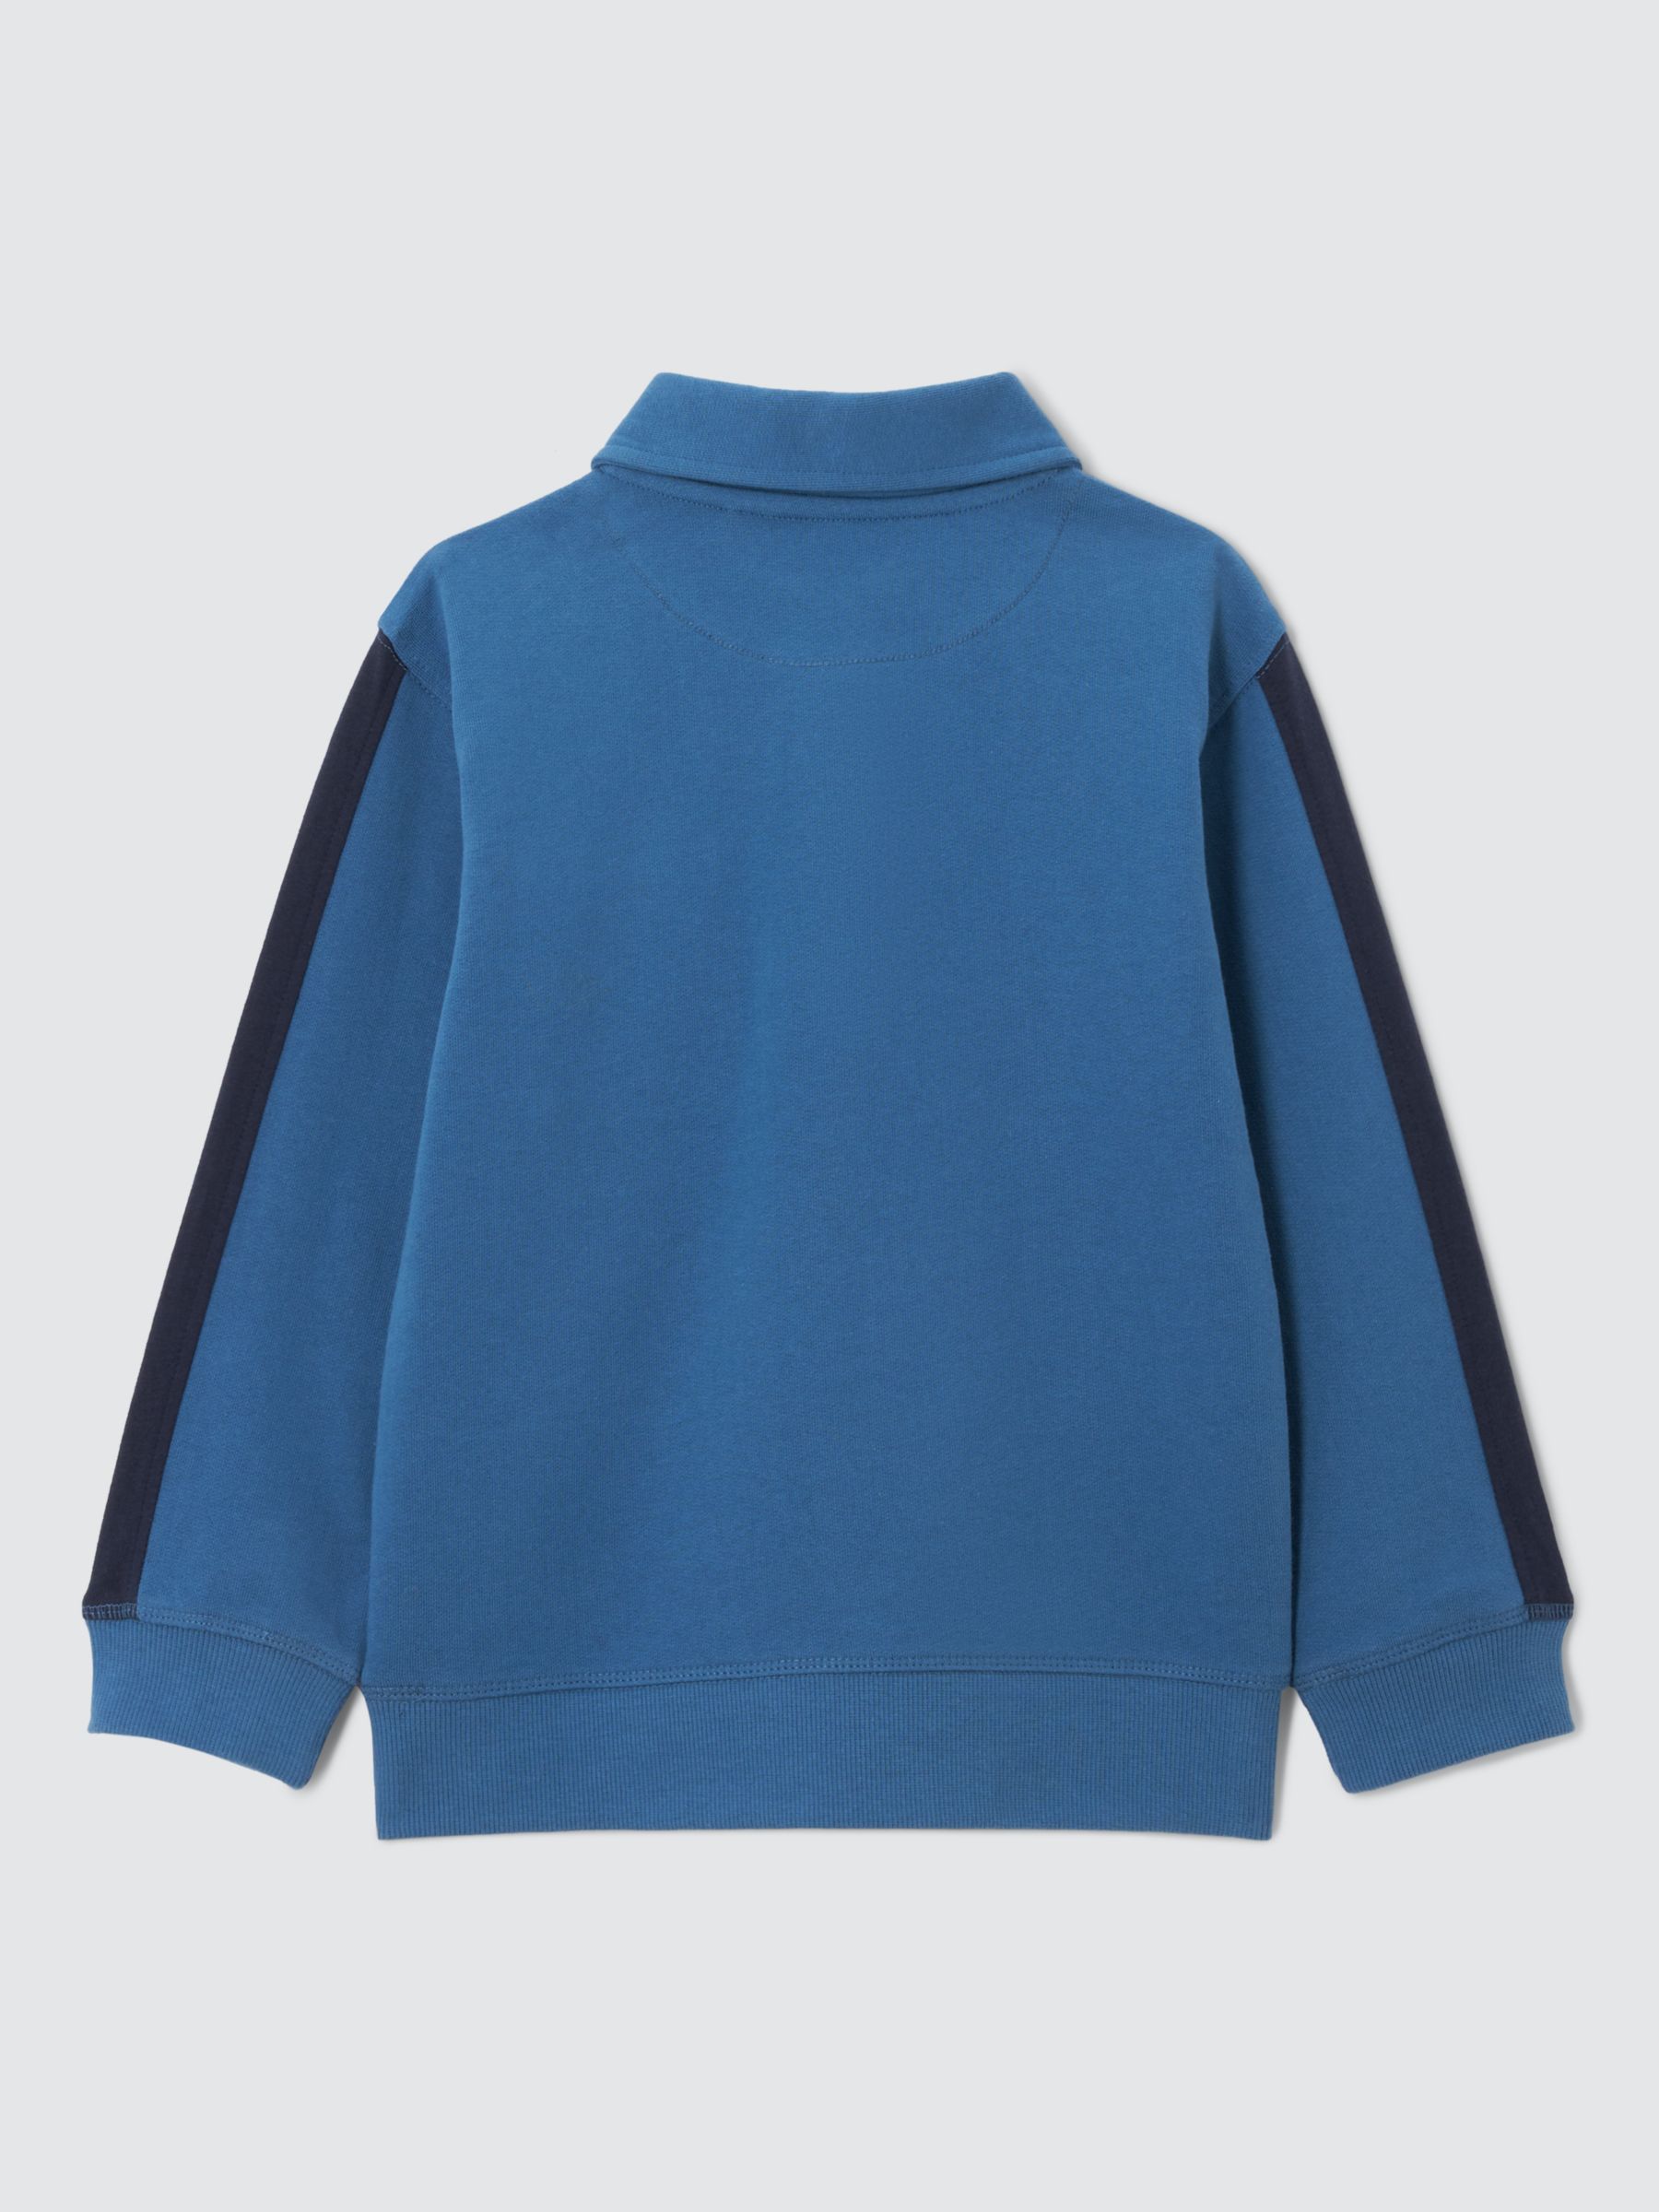 John Lewis Kids' Space 1/4 Zip Sweatshirt, Blue, 10 years